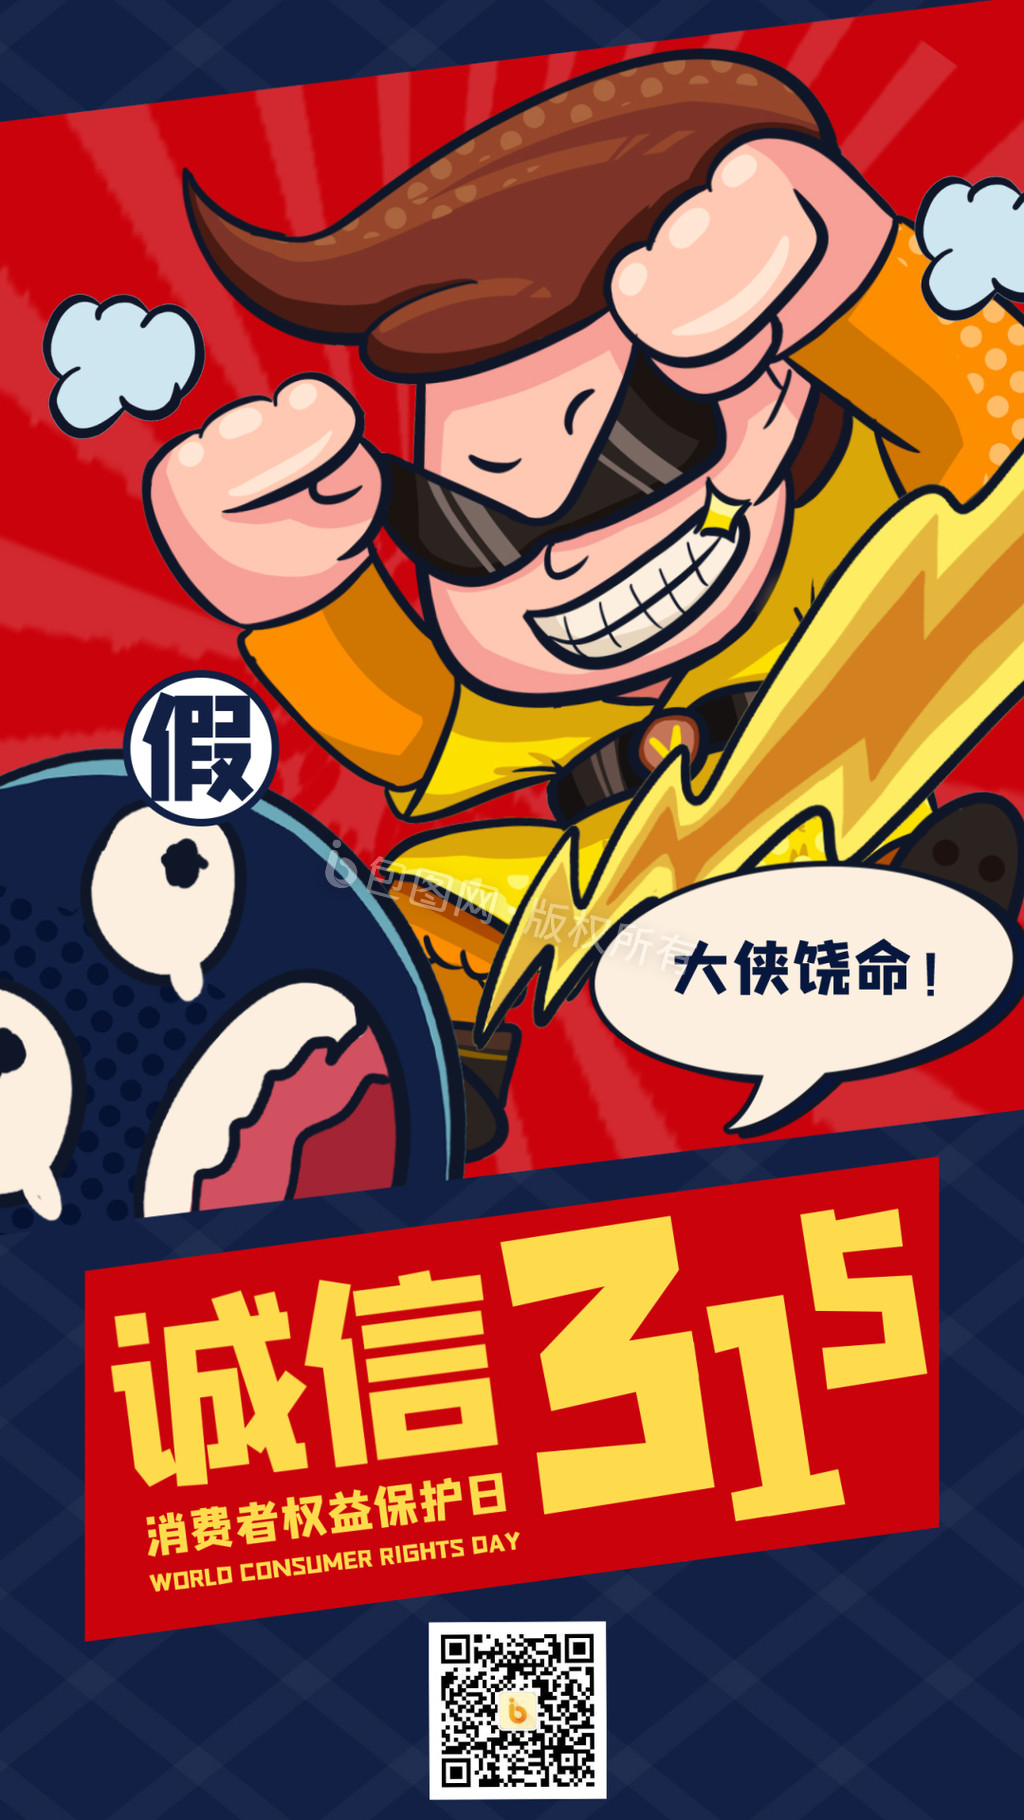 橙红色315打假创意插画警察打假手绘315消费者权益日宣传中文海报 - 模板 - Canva可画